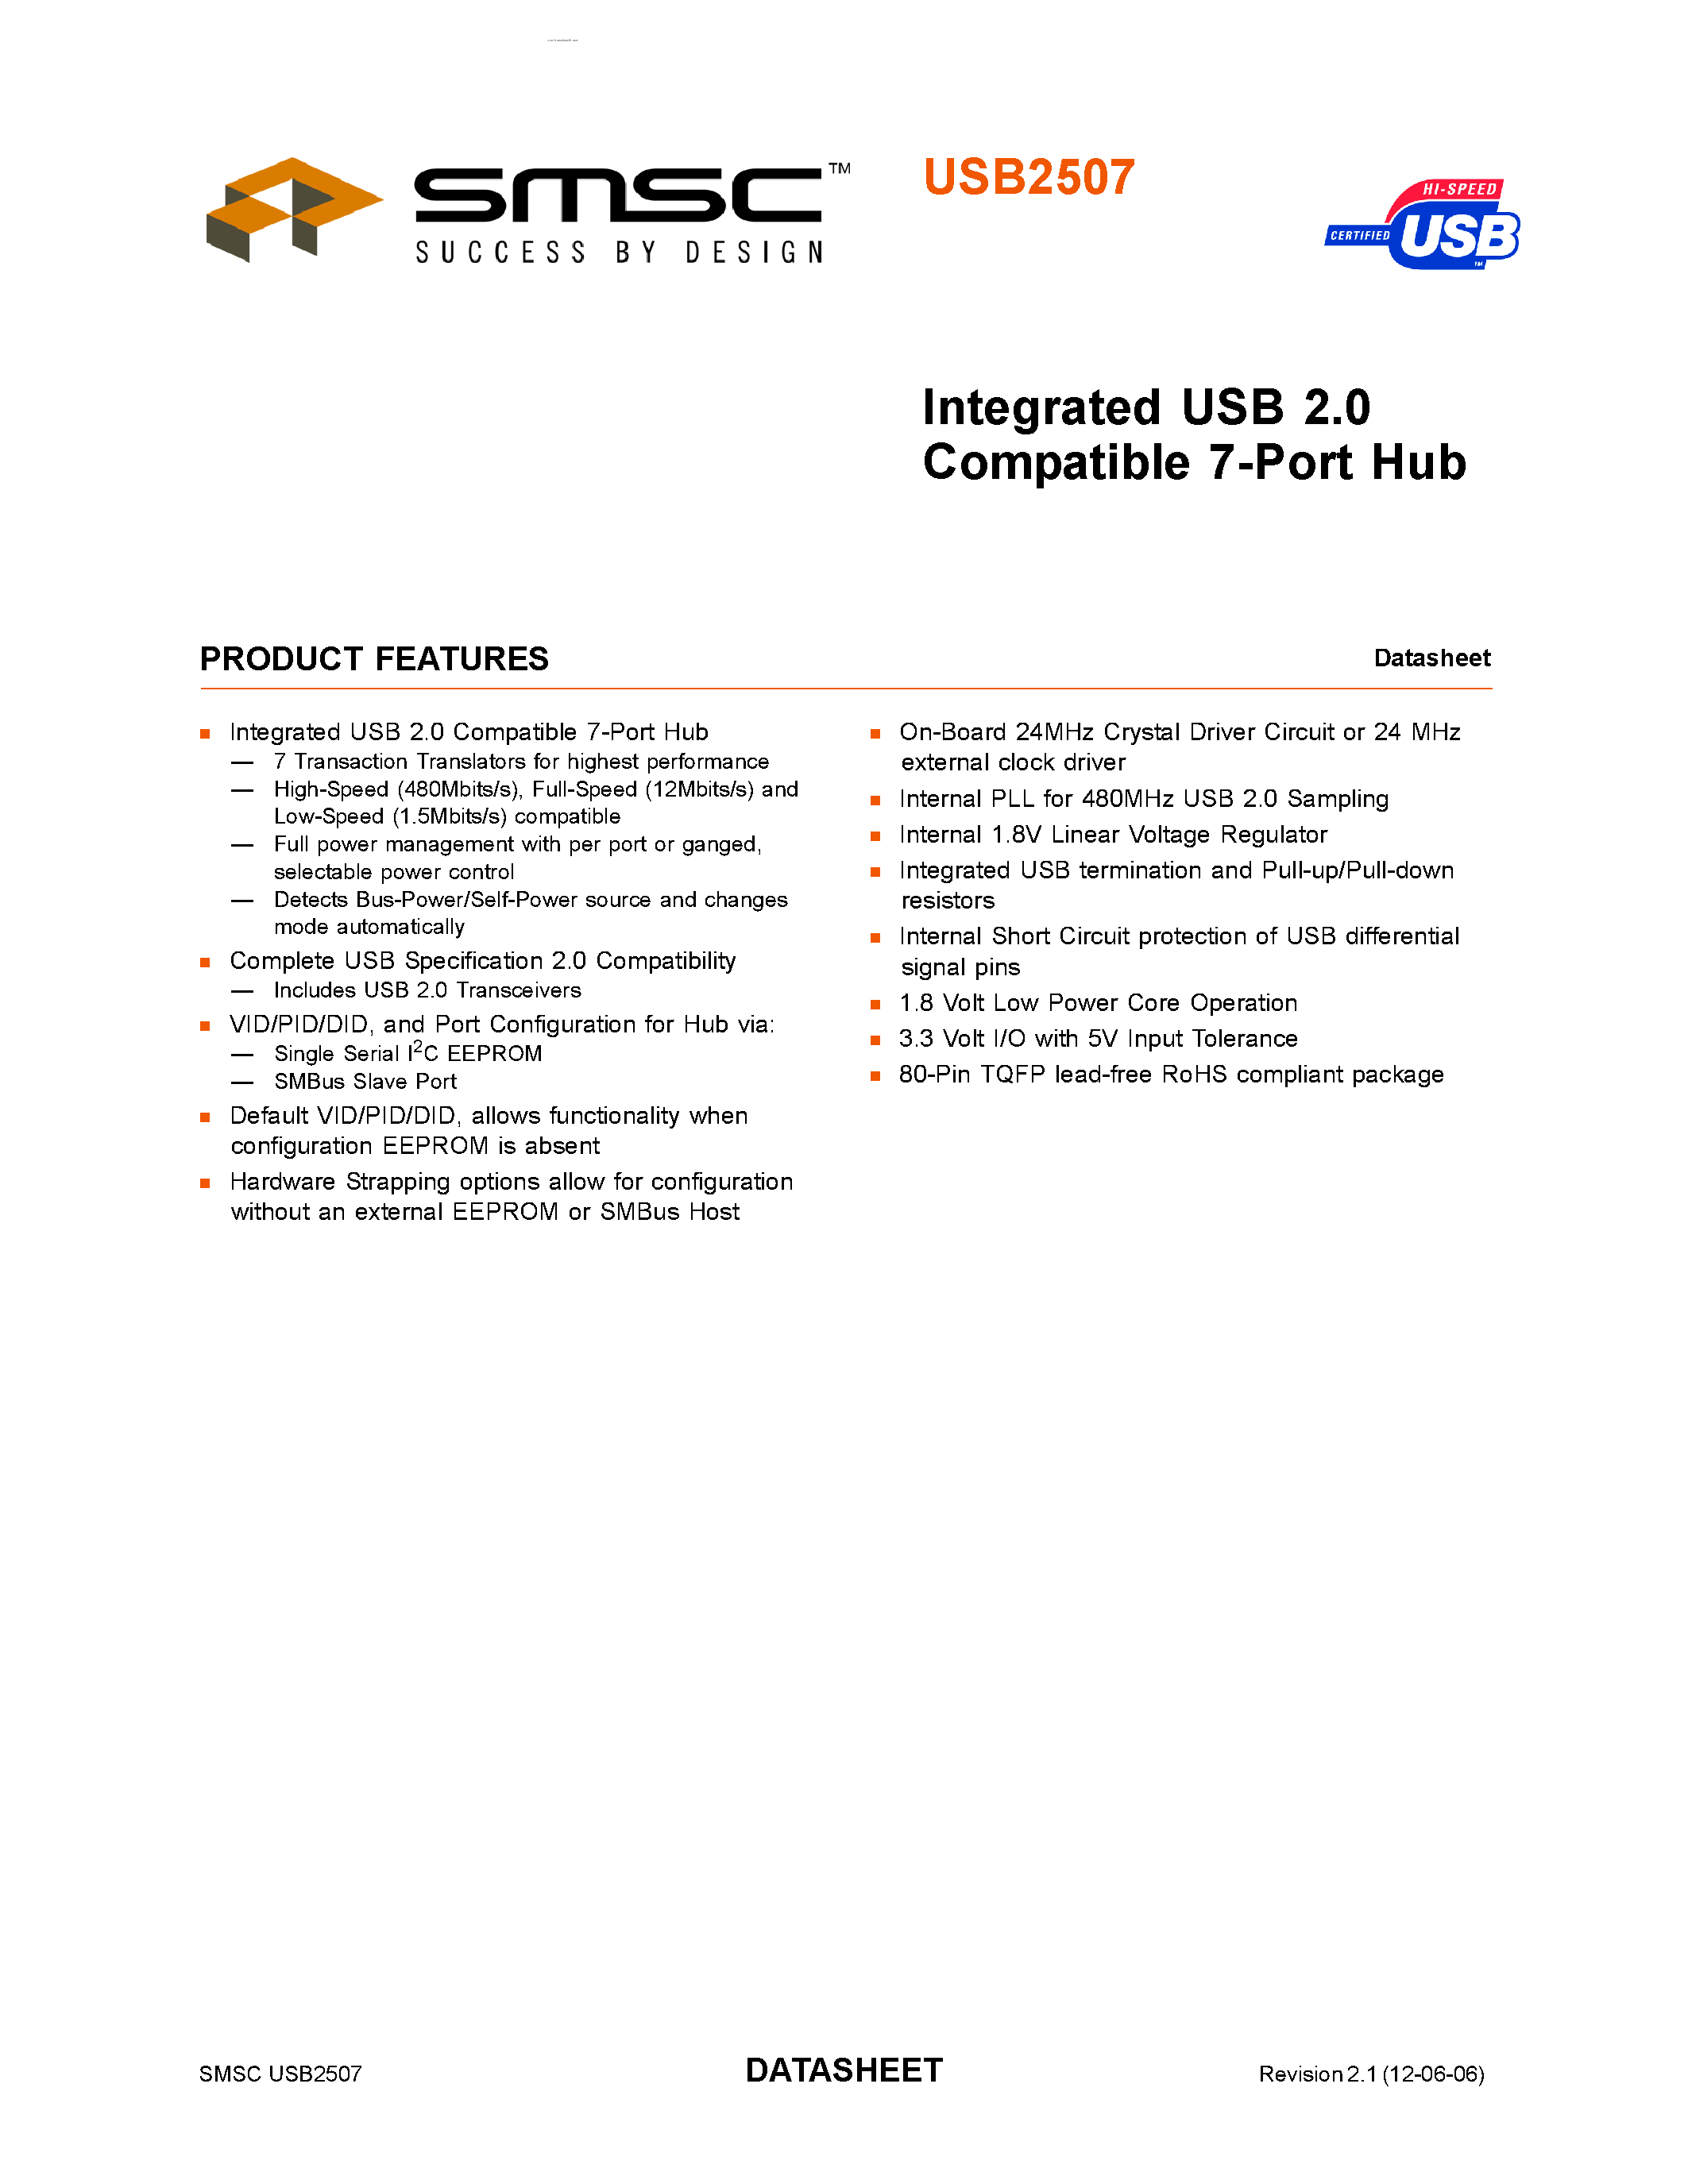 Даташит USB2507 - Integrated USB 2.0 Compatible 7-Port Hub страница 1